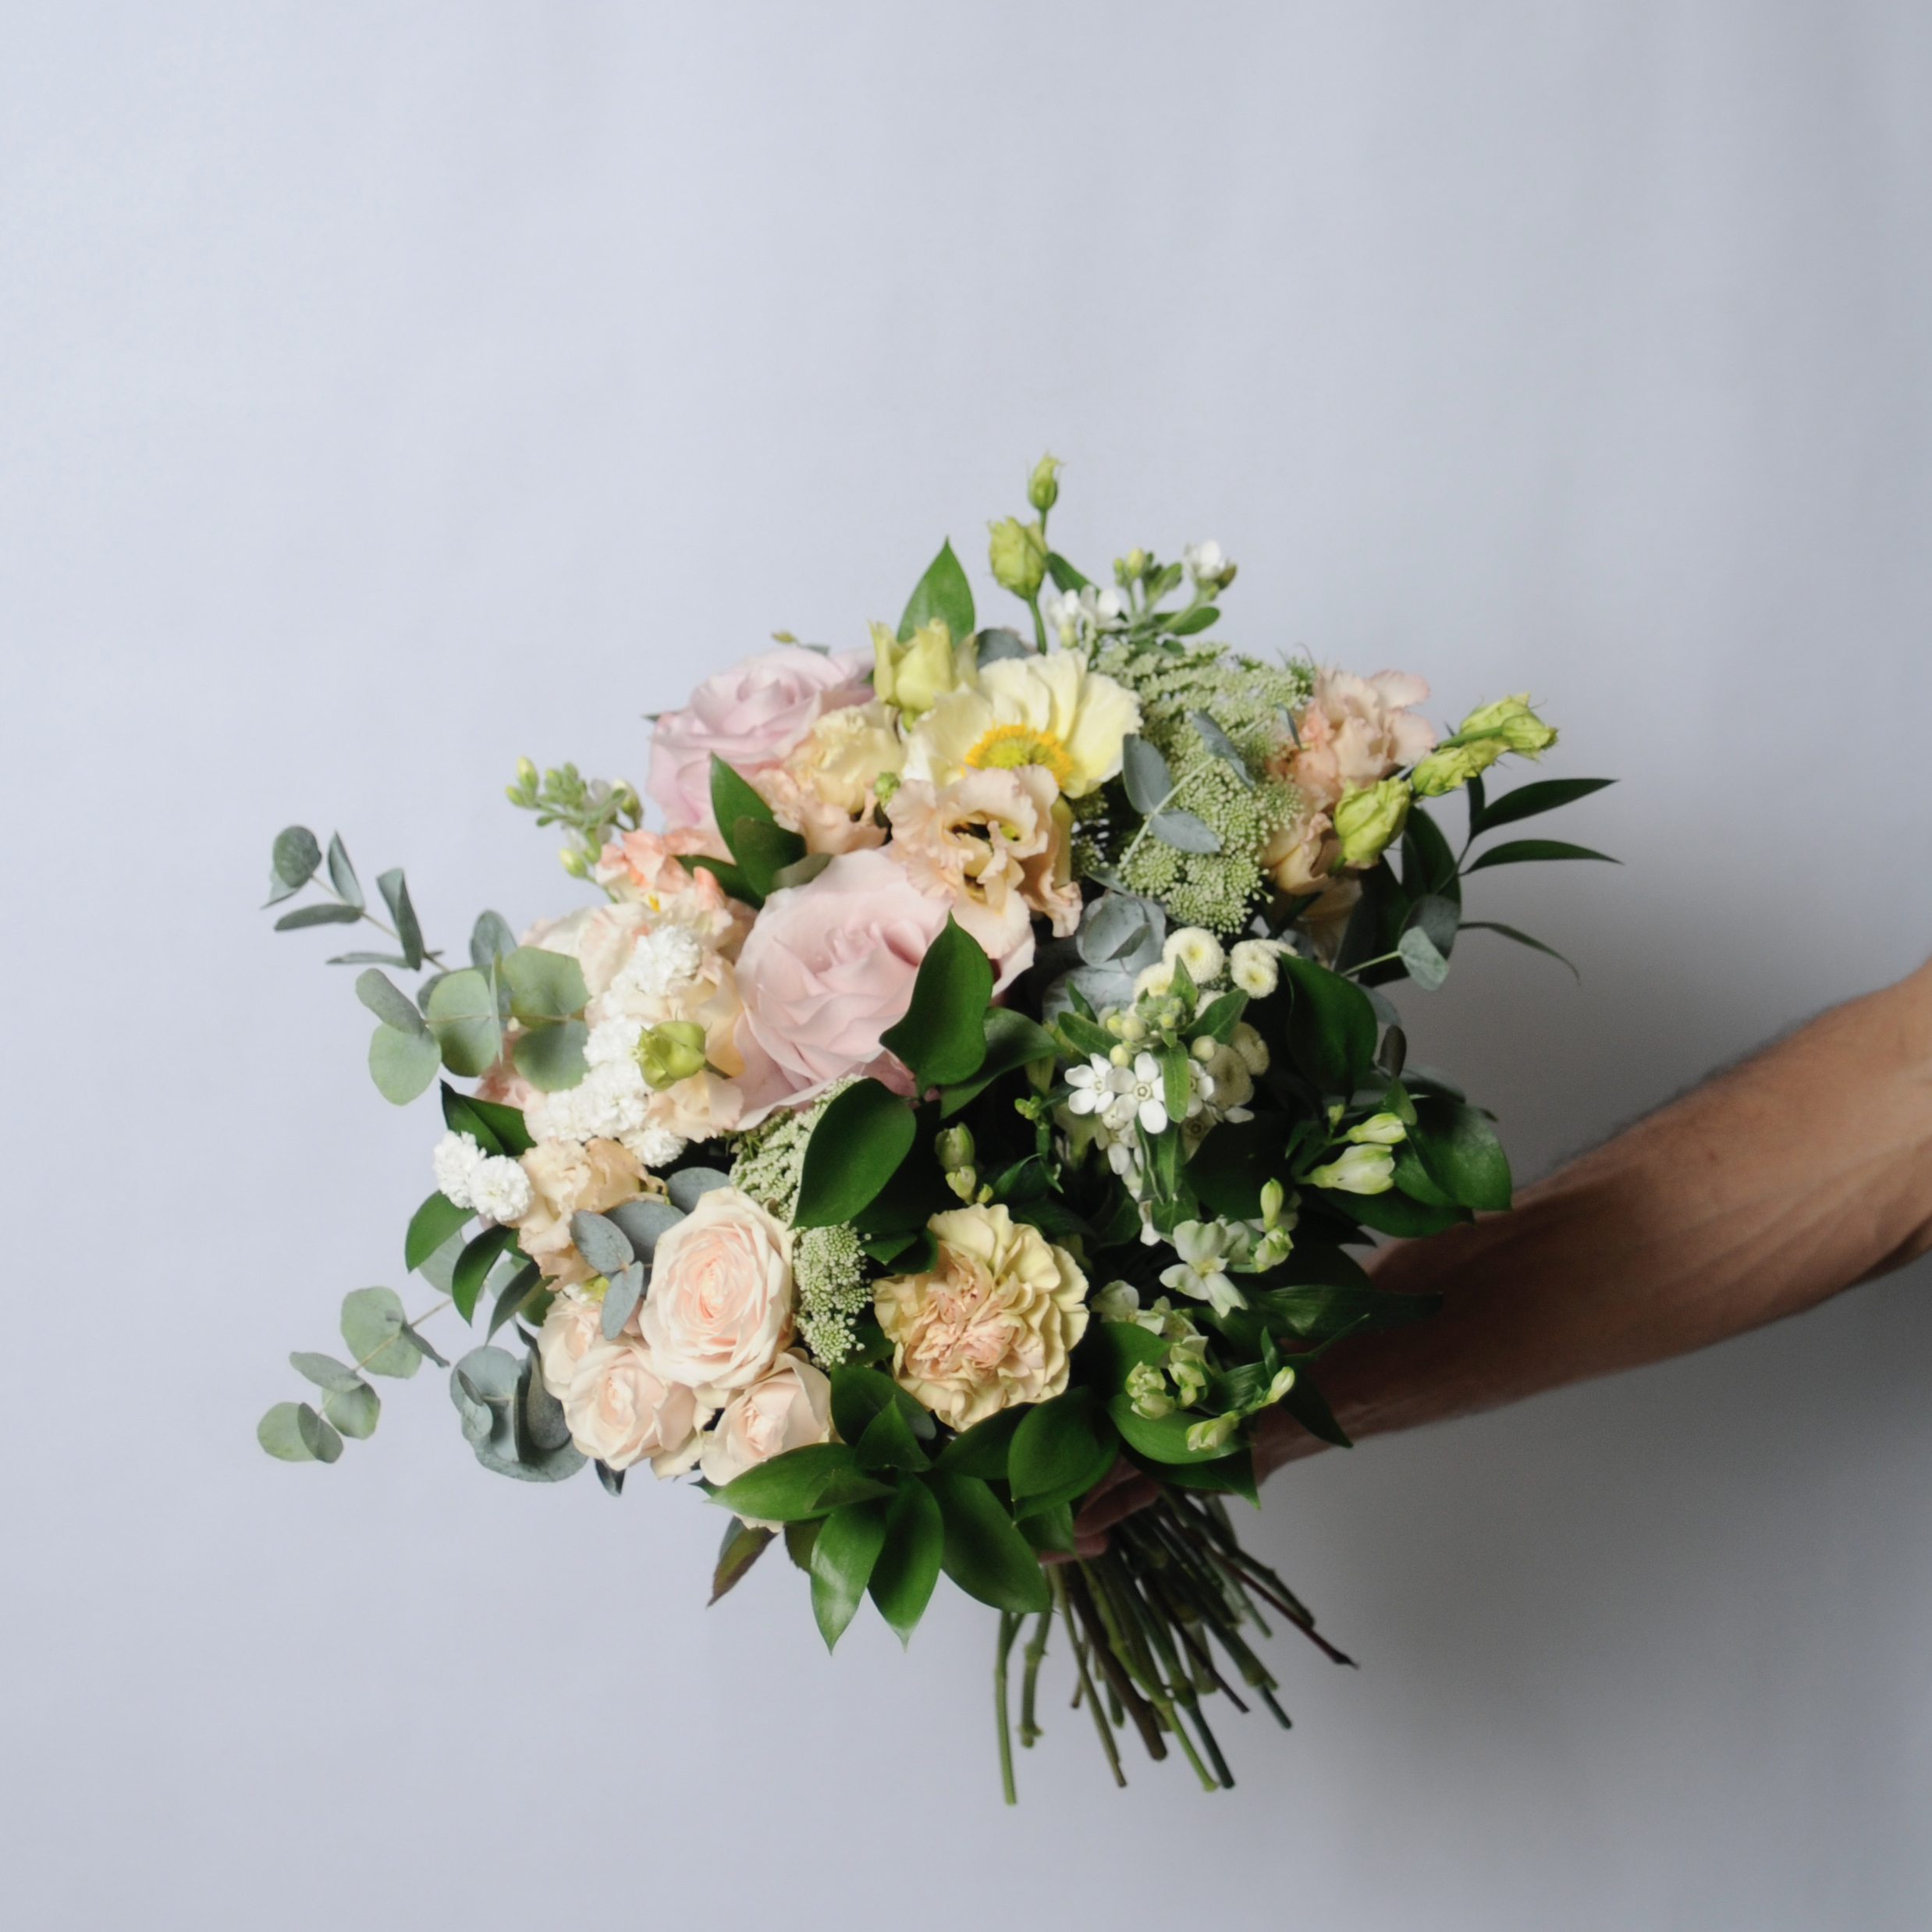 Généreux bouquet de fleurs fraîches, tons pastels – Bertrand, Artisan  Floral à Paris